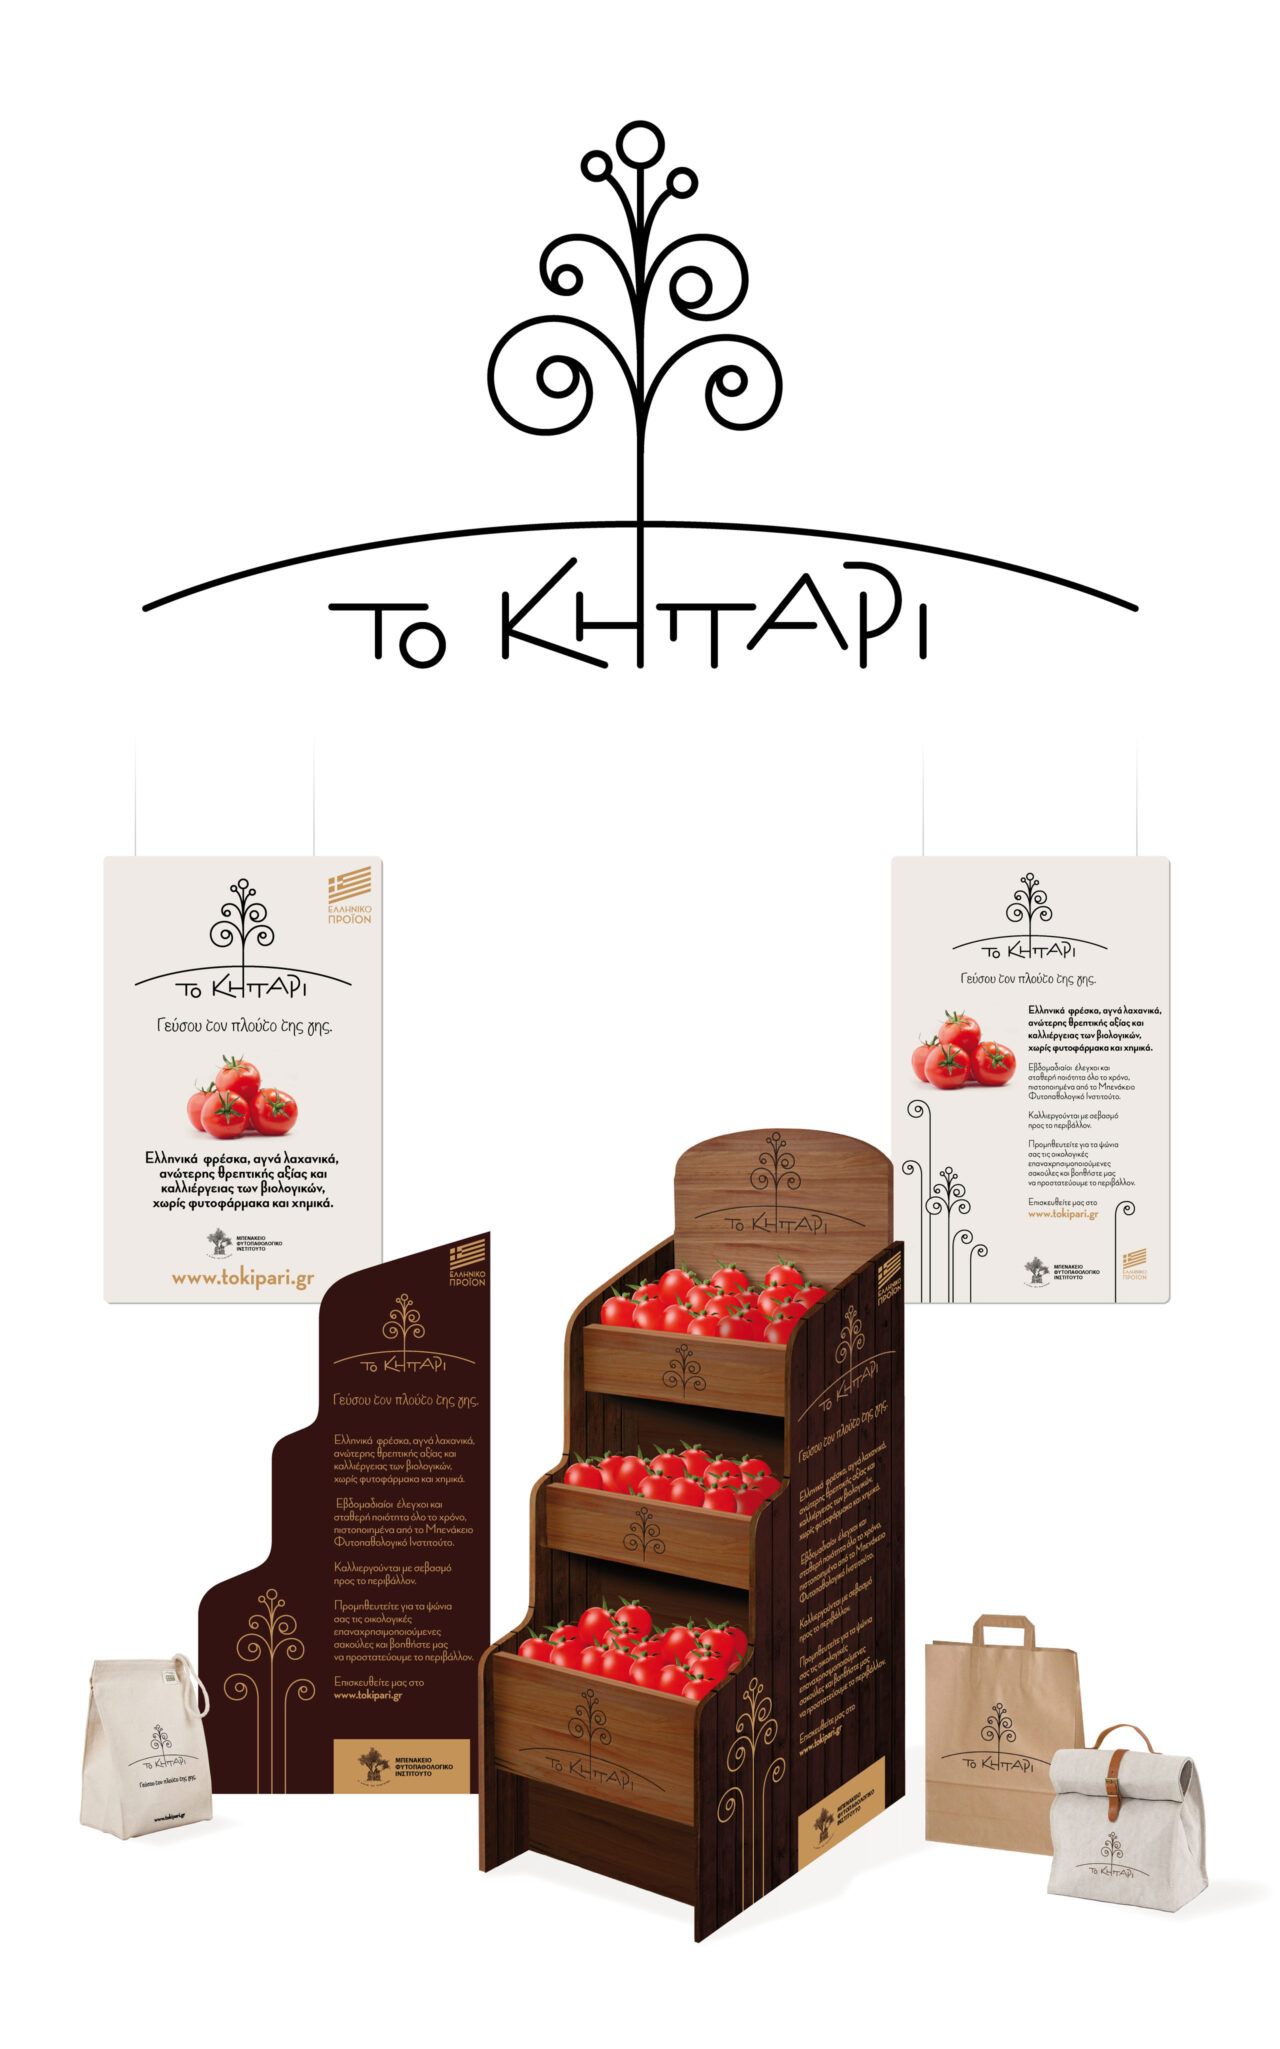 Nethouse farming brand identity design for To Kipari